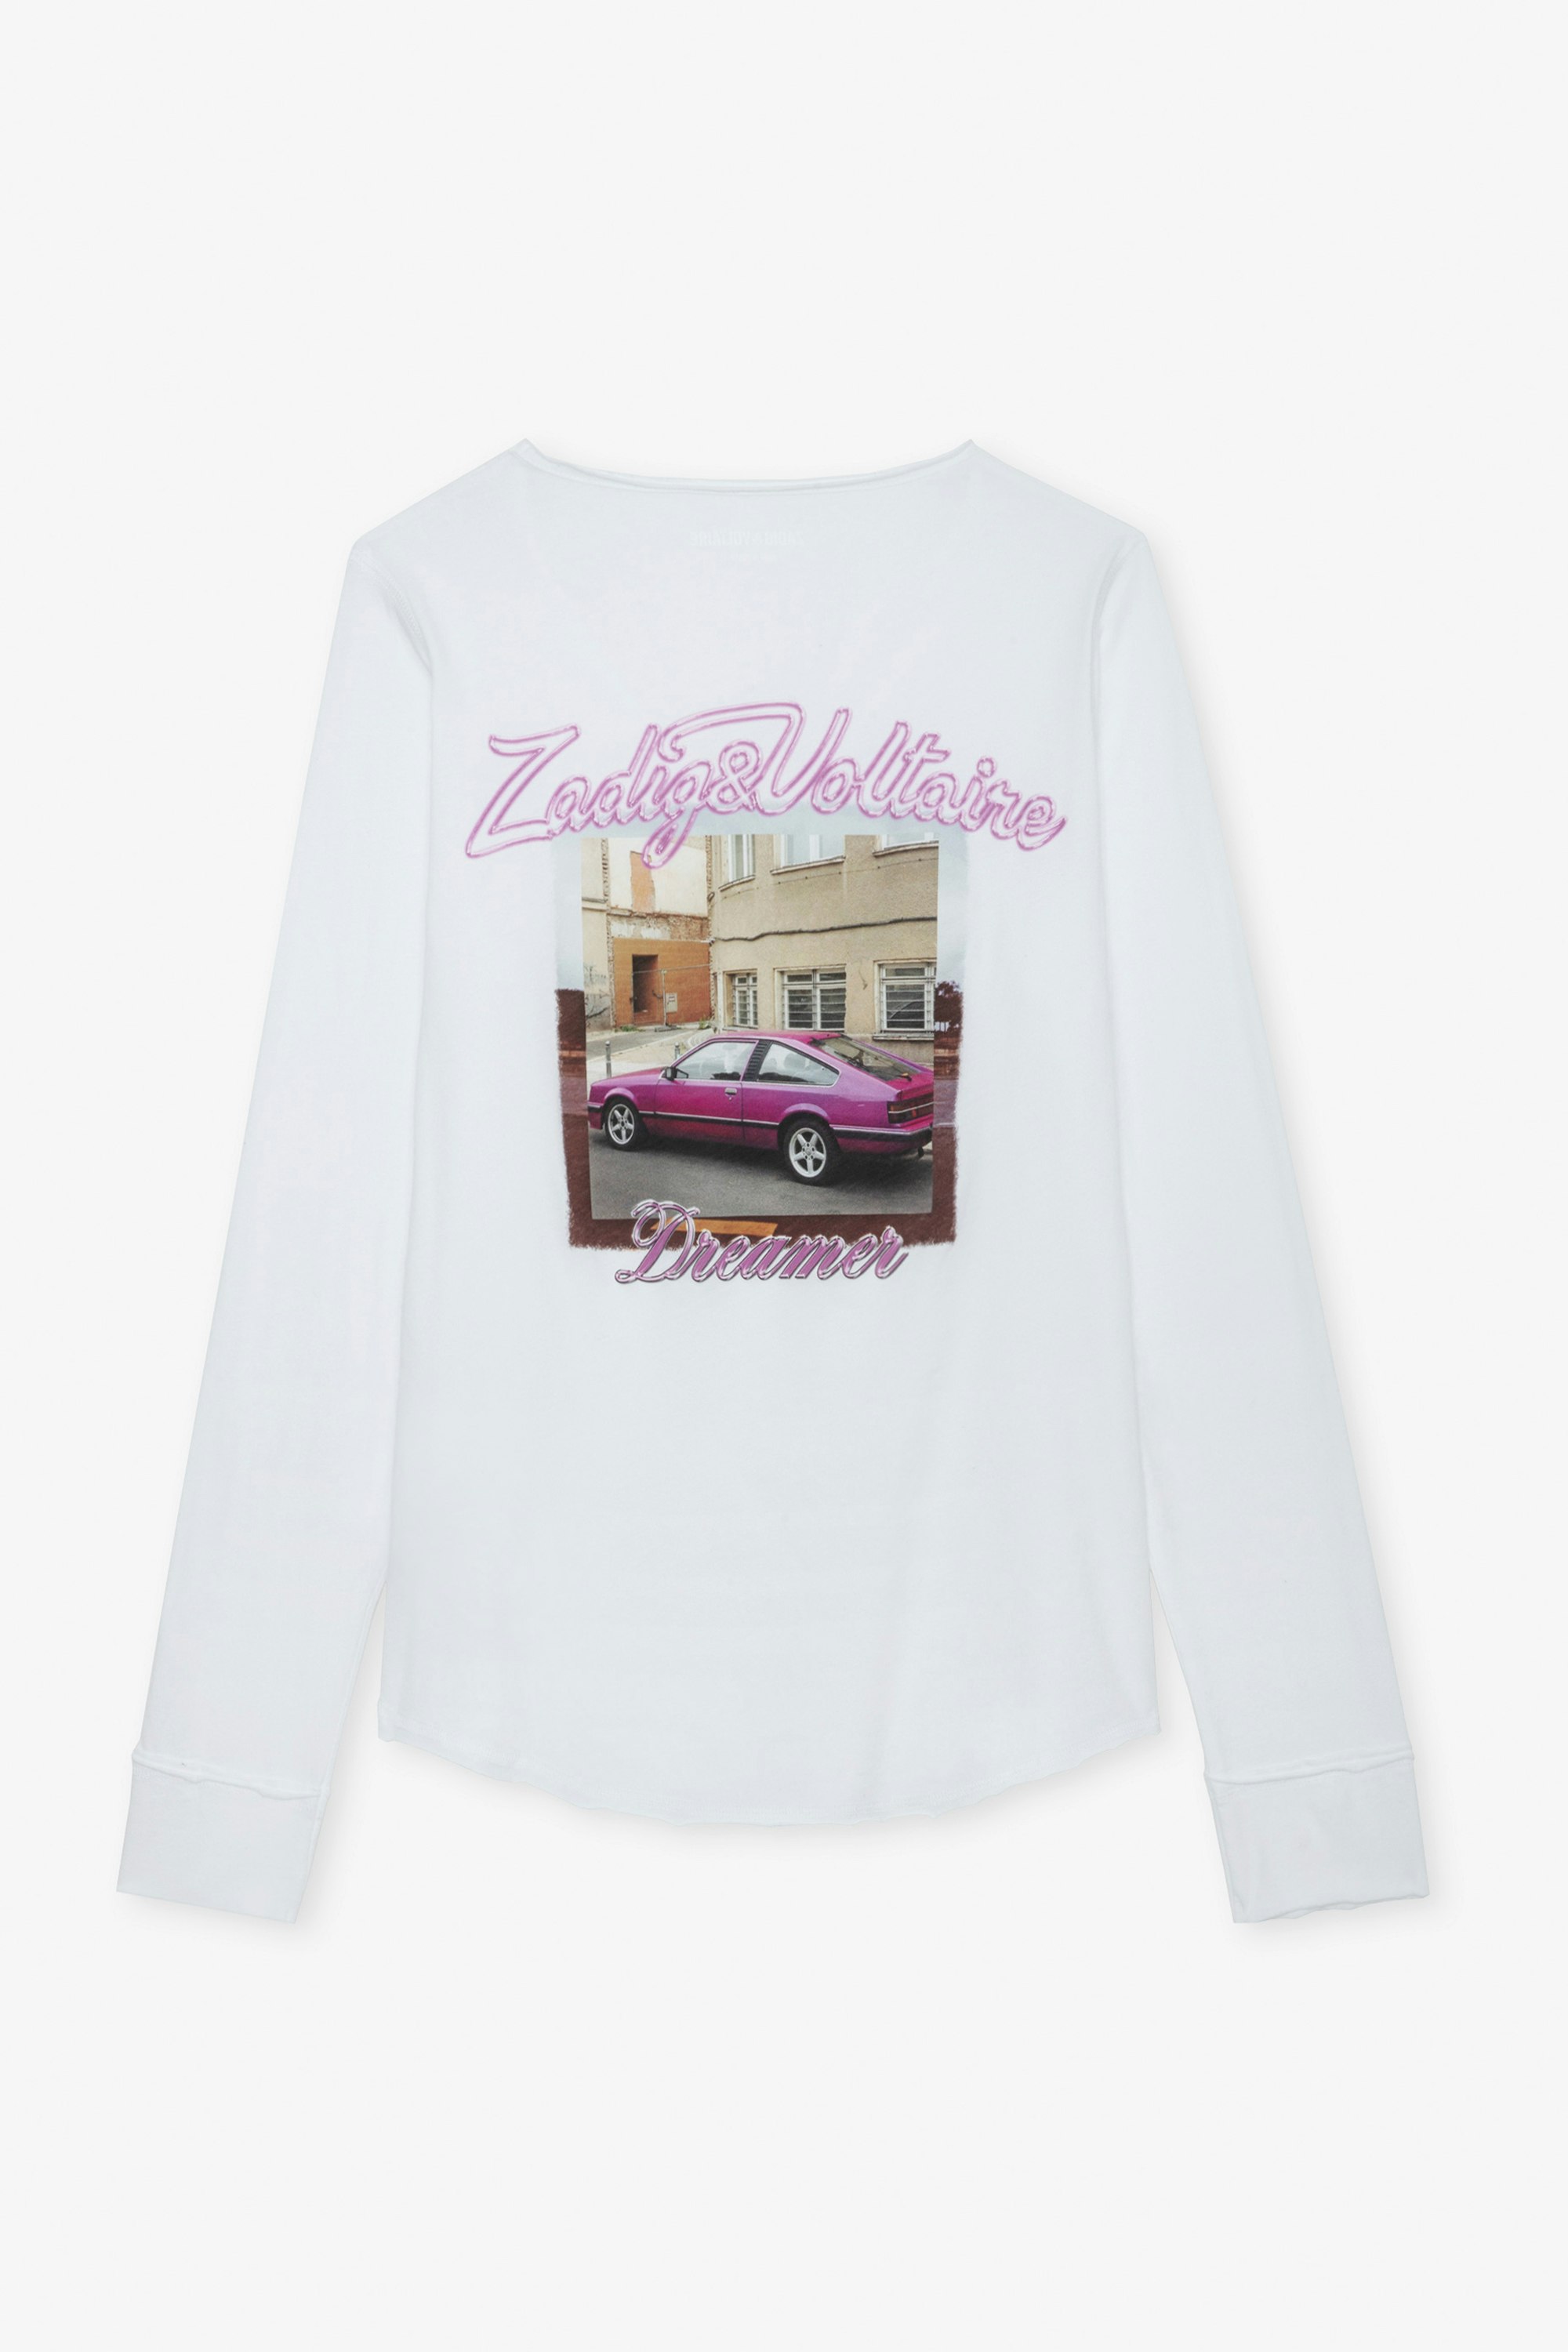 Tunisien Photoprint - Camiseta blanca de algodón con cuello panadero y manga larga para mujer, con estampado fotográfico Pink Car en la espalda.